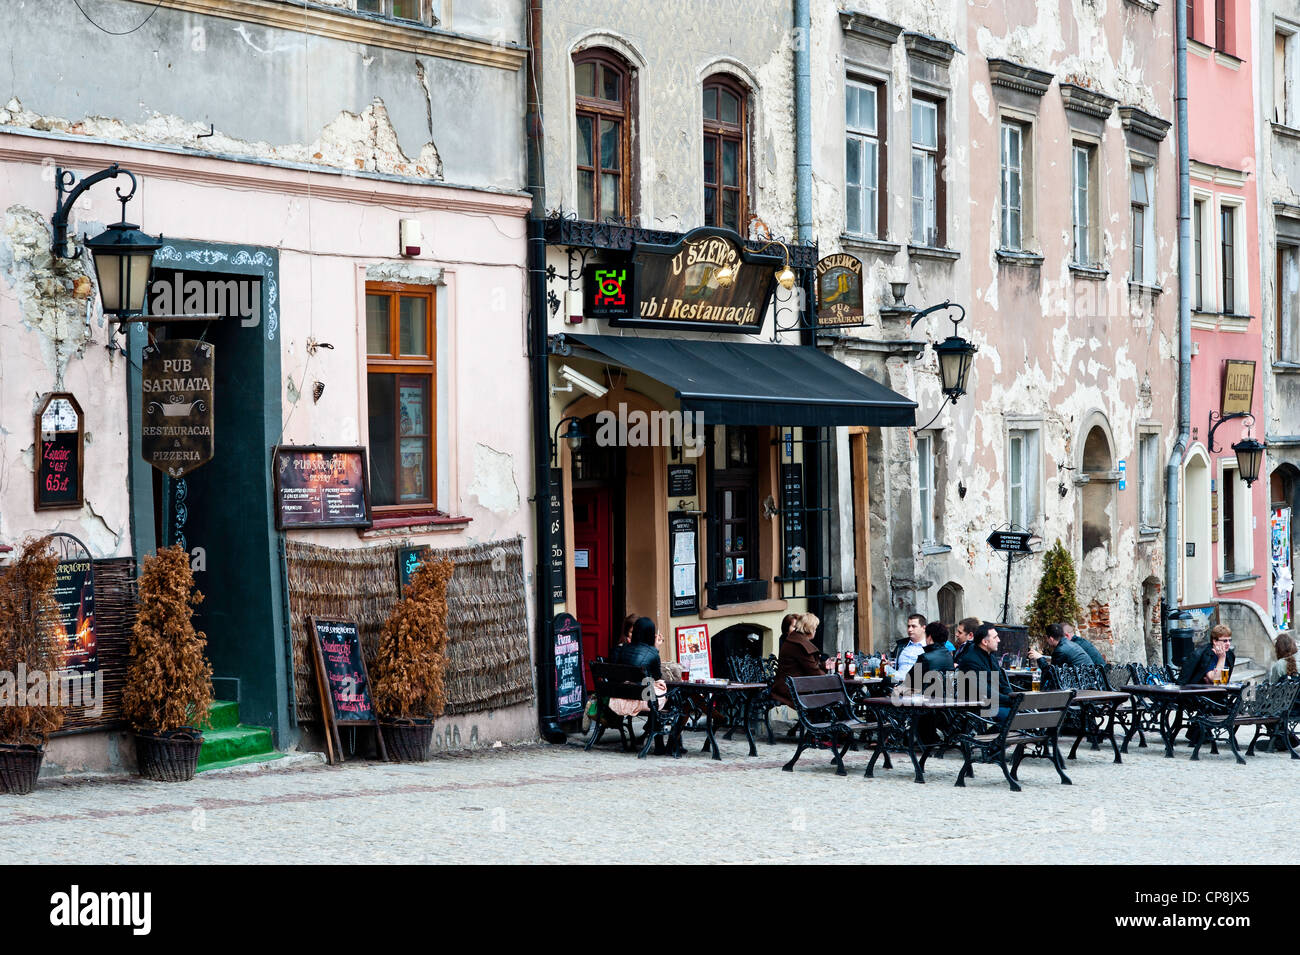 Street scene in Lublin, Poland Stock Photo